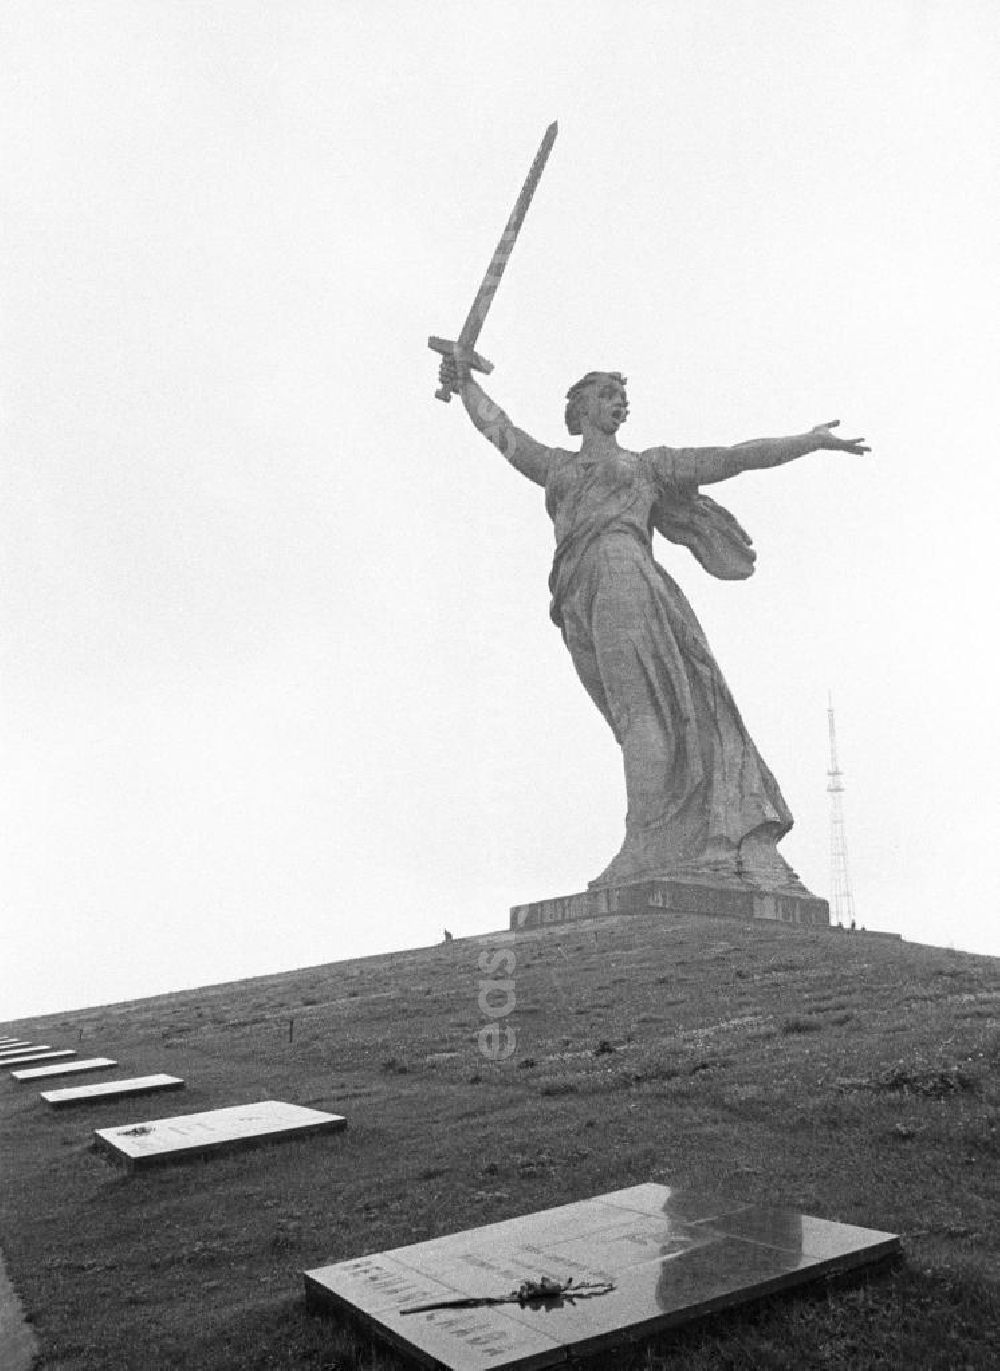 GDR photo archive: Wolgograd - Blick auf den Mamajew-Hügel mit dem Monument Mutter Heimat ruft auf eine riesige Frauengestalt in wehendem Gewand und emporgestrecktem Schwert. Das Monument war Logo für das IV. Festival der Freundschaft in Wolgograd (auch Wolograd).